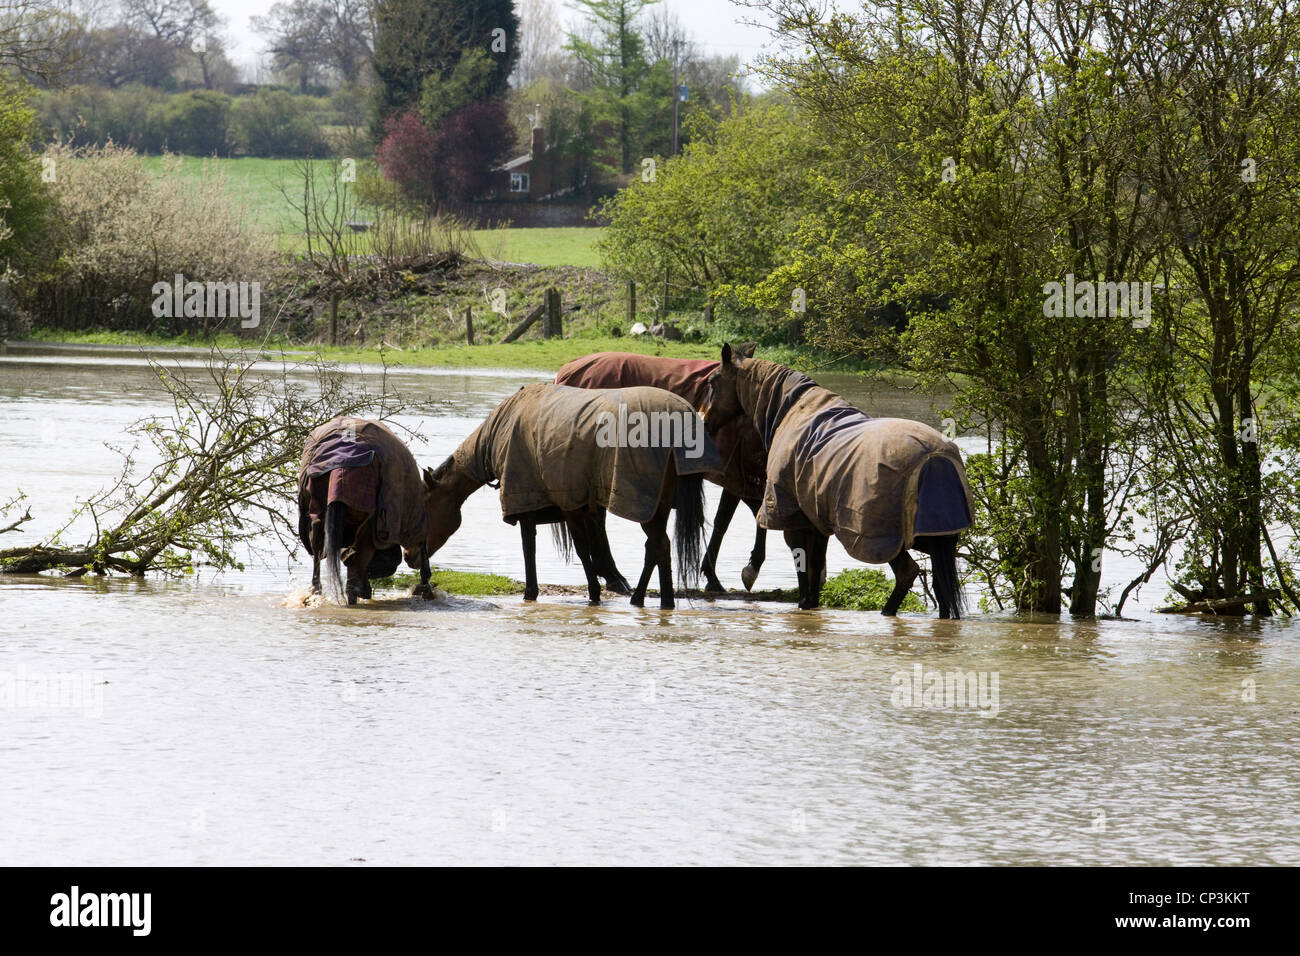 Chevaux Equus ferus caballus debout dans l'eau des inondations dans la région de Kings - Angleterre sur la rivière Cherwell Banque D'Images